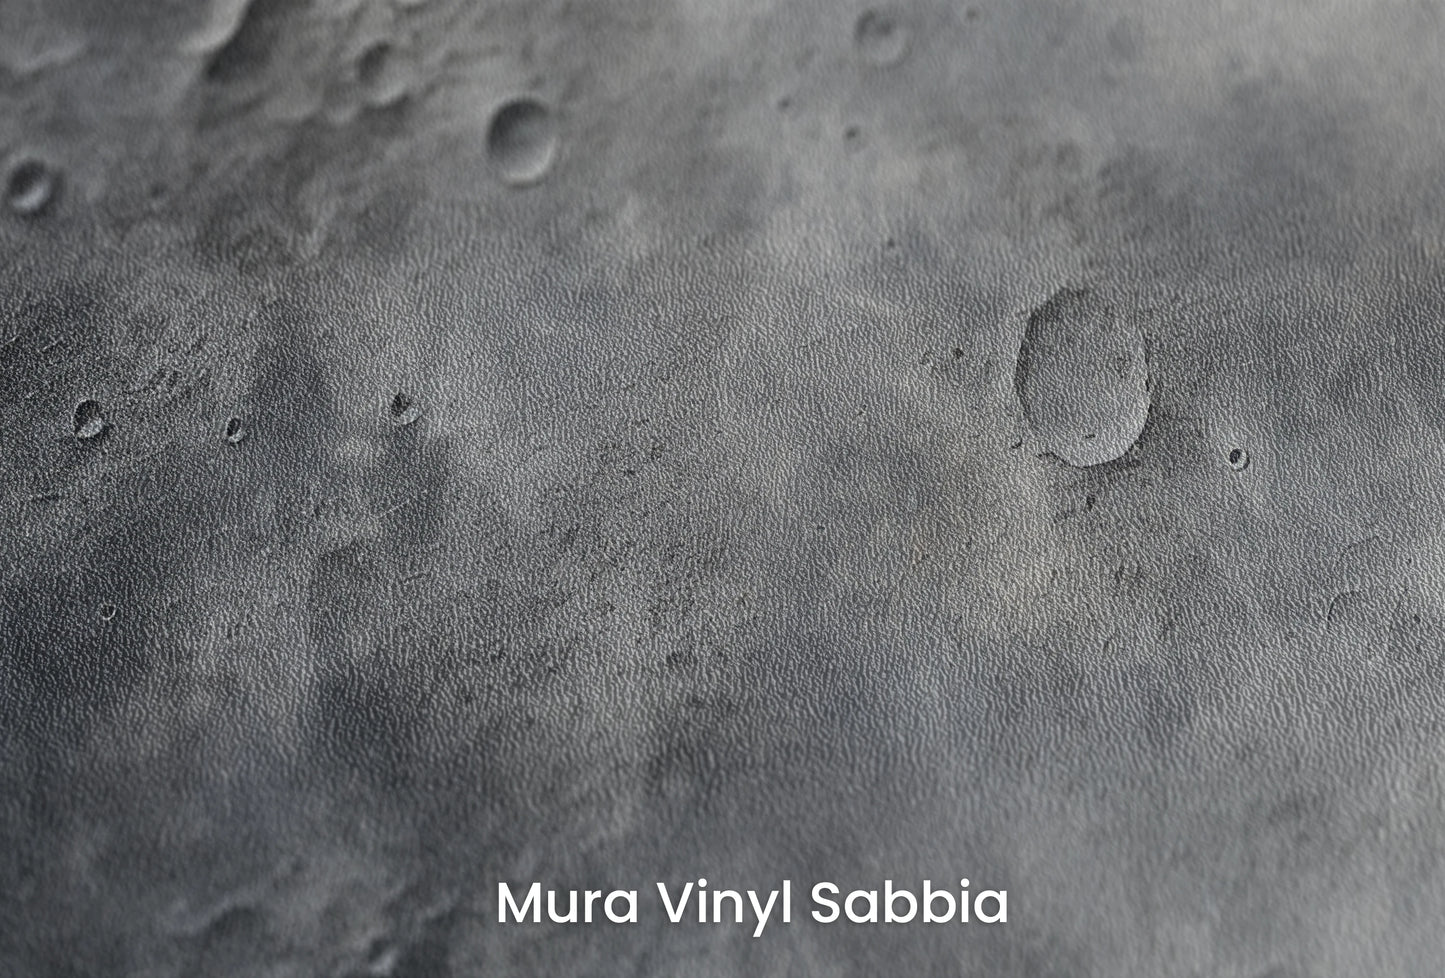 Zbliżenie na artystyczną fototapetę o nazwie Cosmic Dawn na podłożu Mura Vinyl Sabbia struktura grubego ziarna piasku.